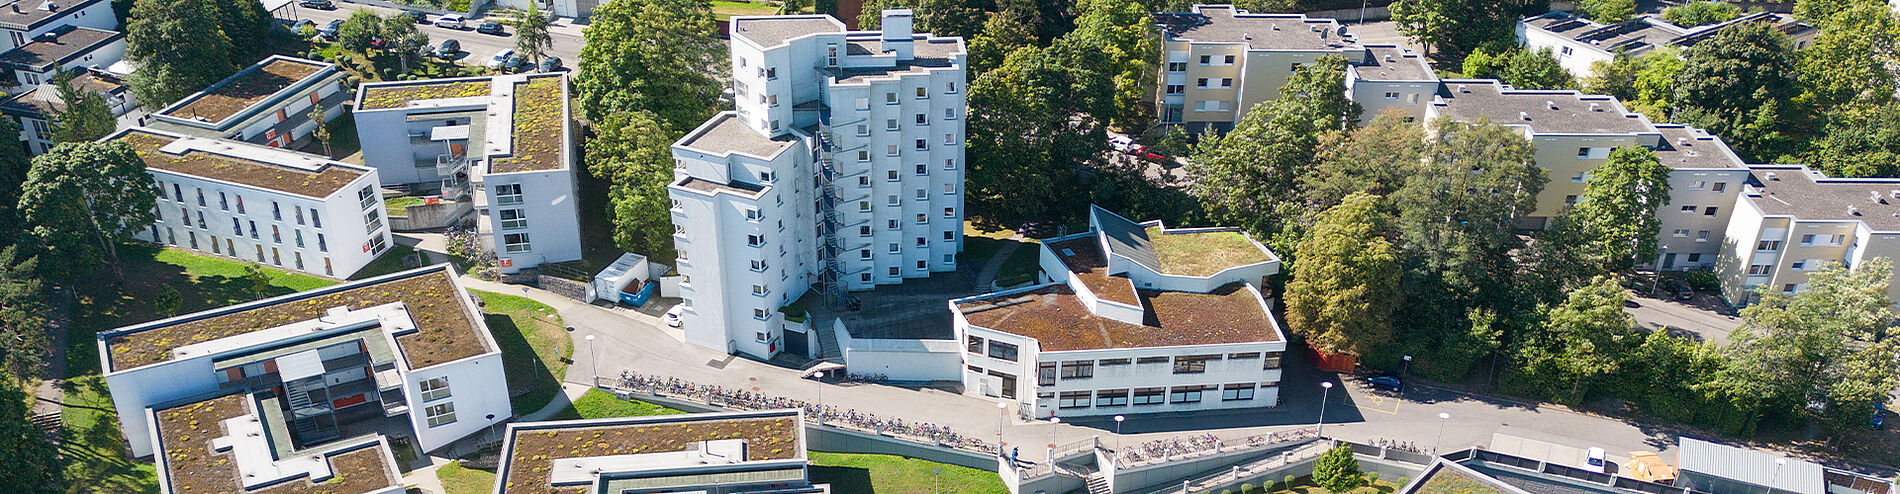 Luftbild der Wohnanlage Sonnenbühl Ost Hochhaus